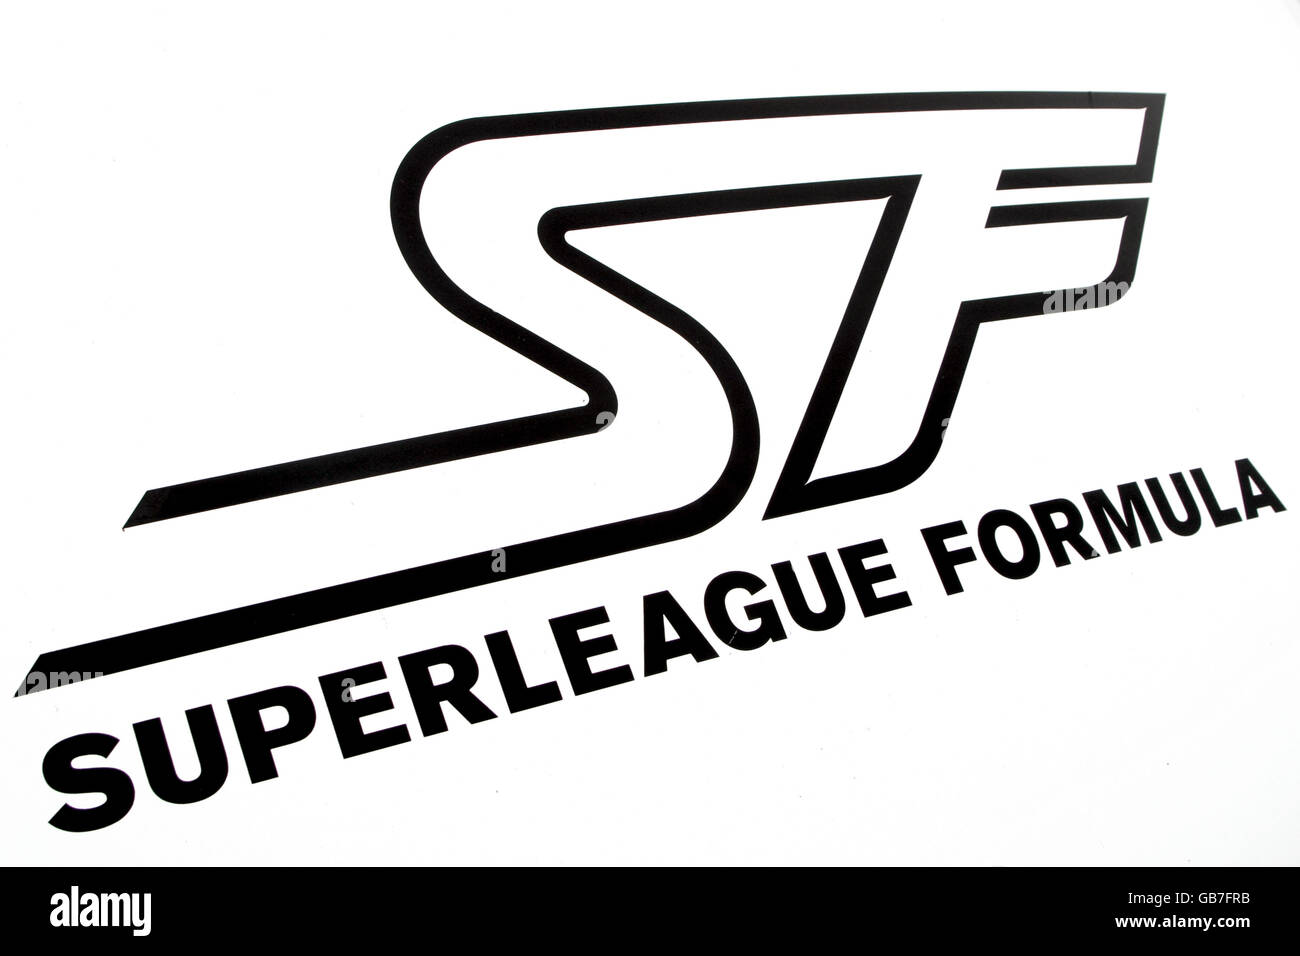 Superleague Formula - Qualifying - Donington Park. Superleague Formula signage Stock Photo